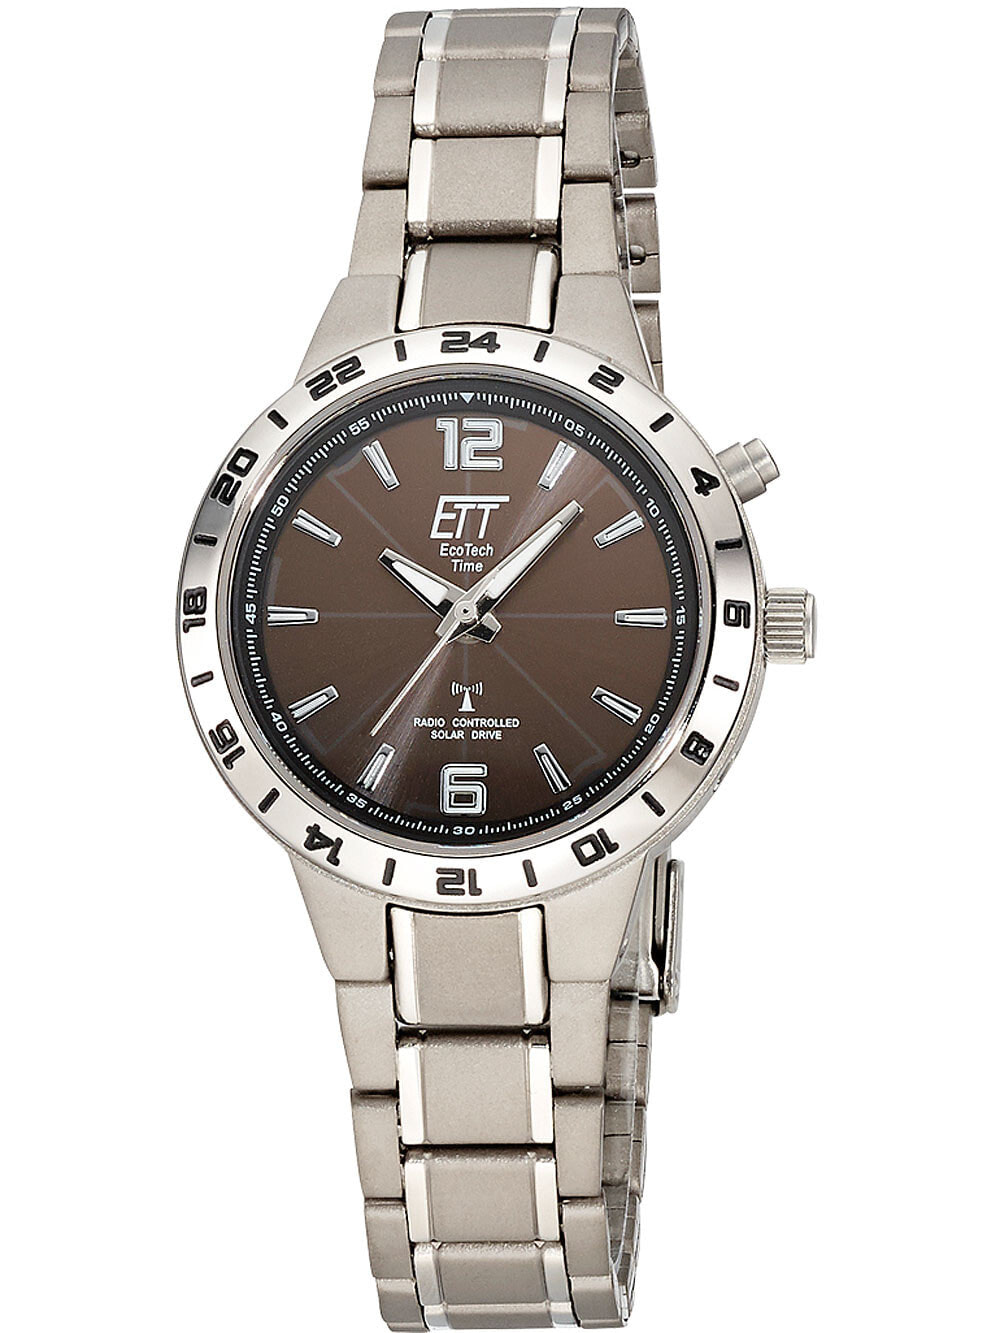 Женские наручные часы с серебряным браслетом ETT ELT-11446-21M Funk Solar Drive Basic Titan ladies 32mm 5ATM